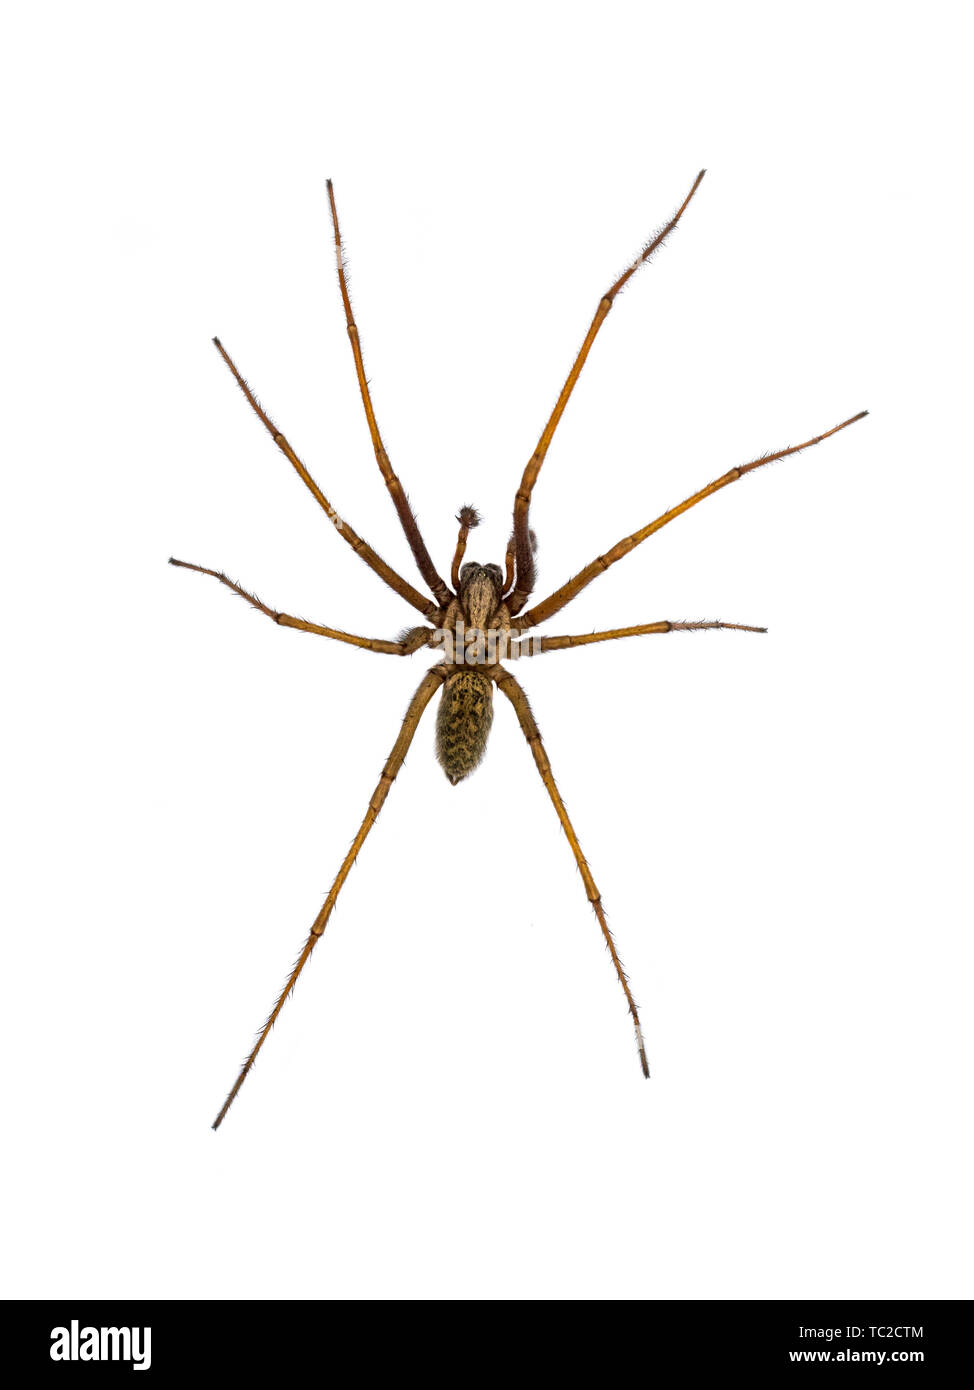 Casa gigante spider (Eratigena atrica) vista dall'alto in basso di aracnide con lunghe gambe pelose isolati su sfondo bianco Foto Stock